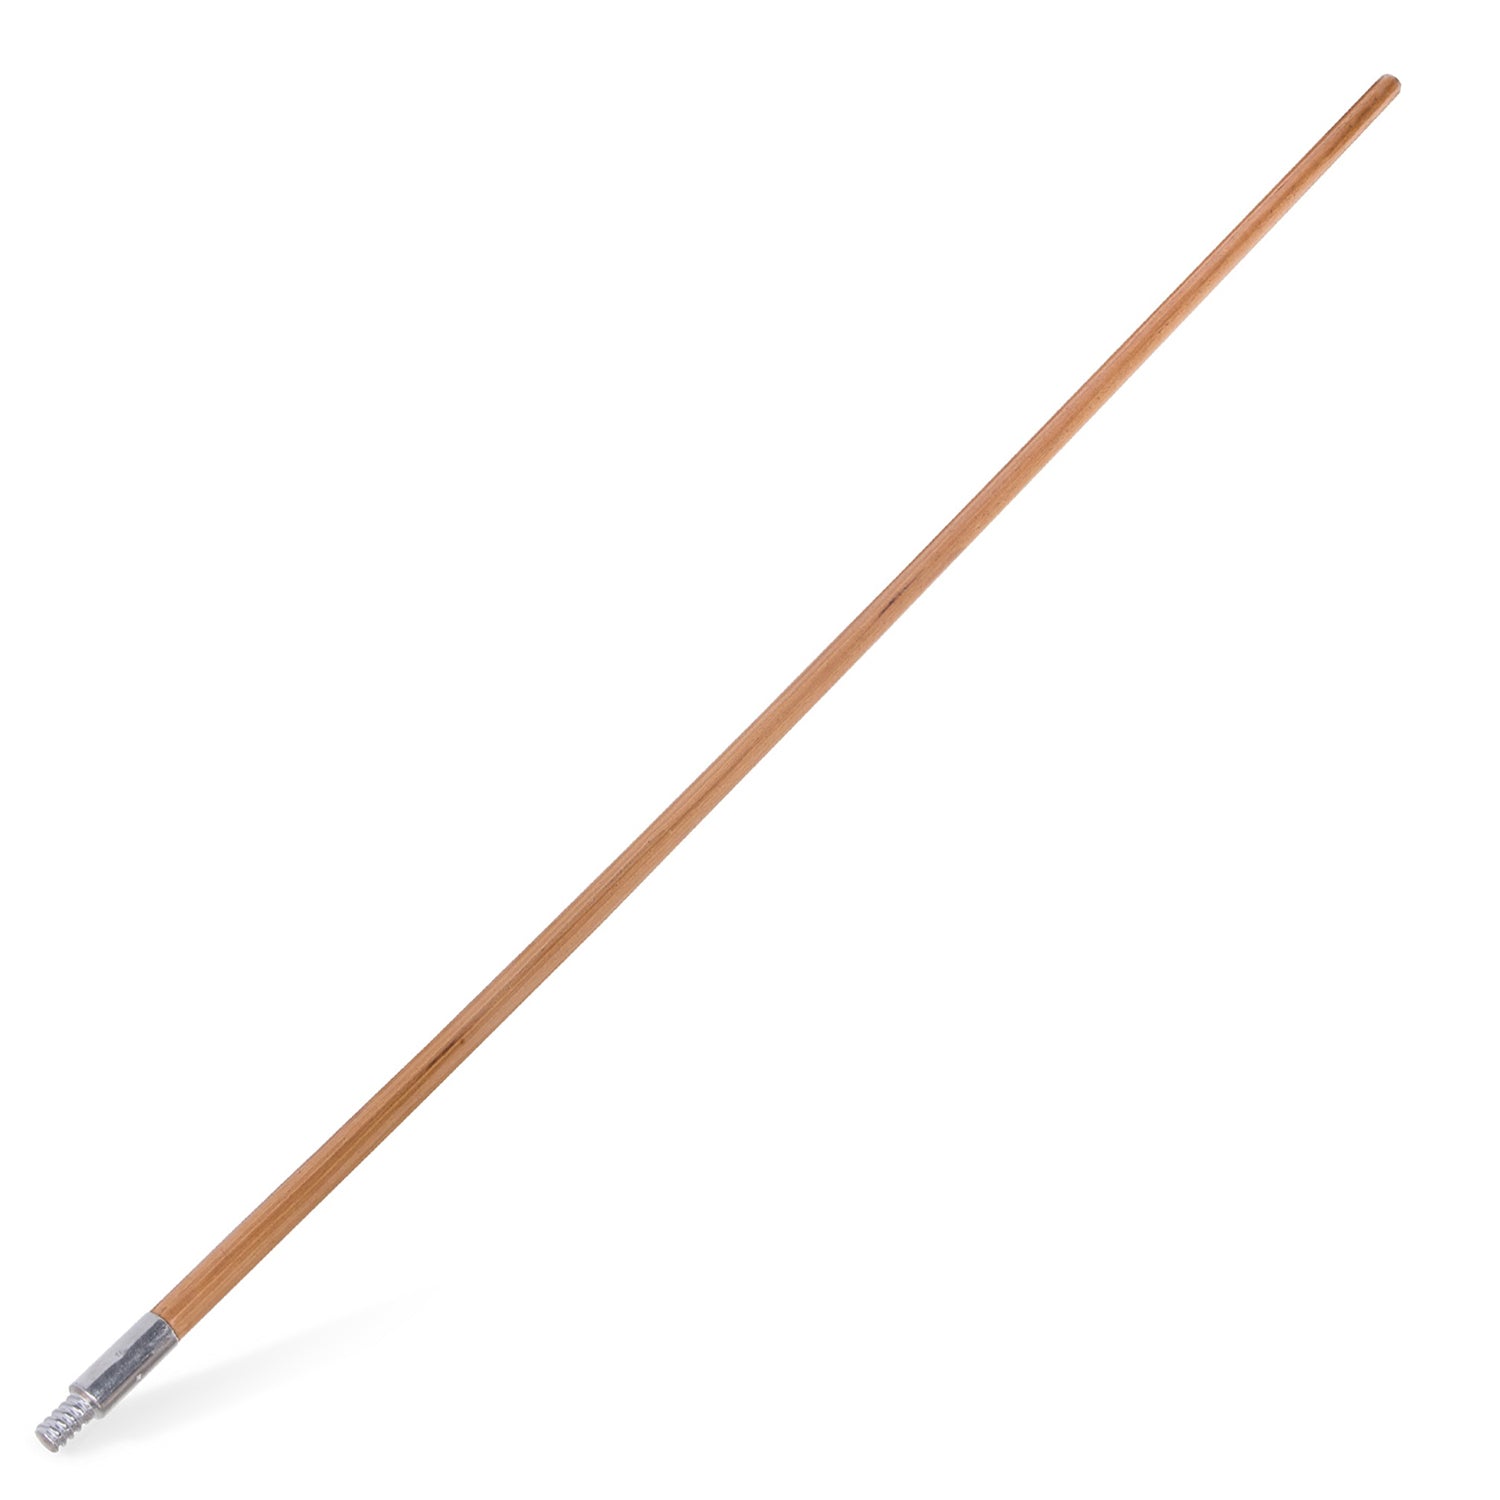 wooden-broom-handle